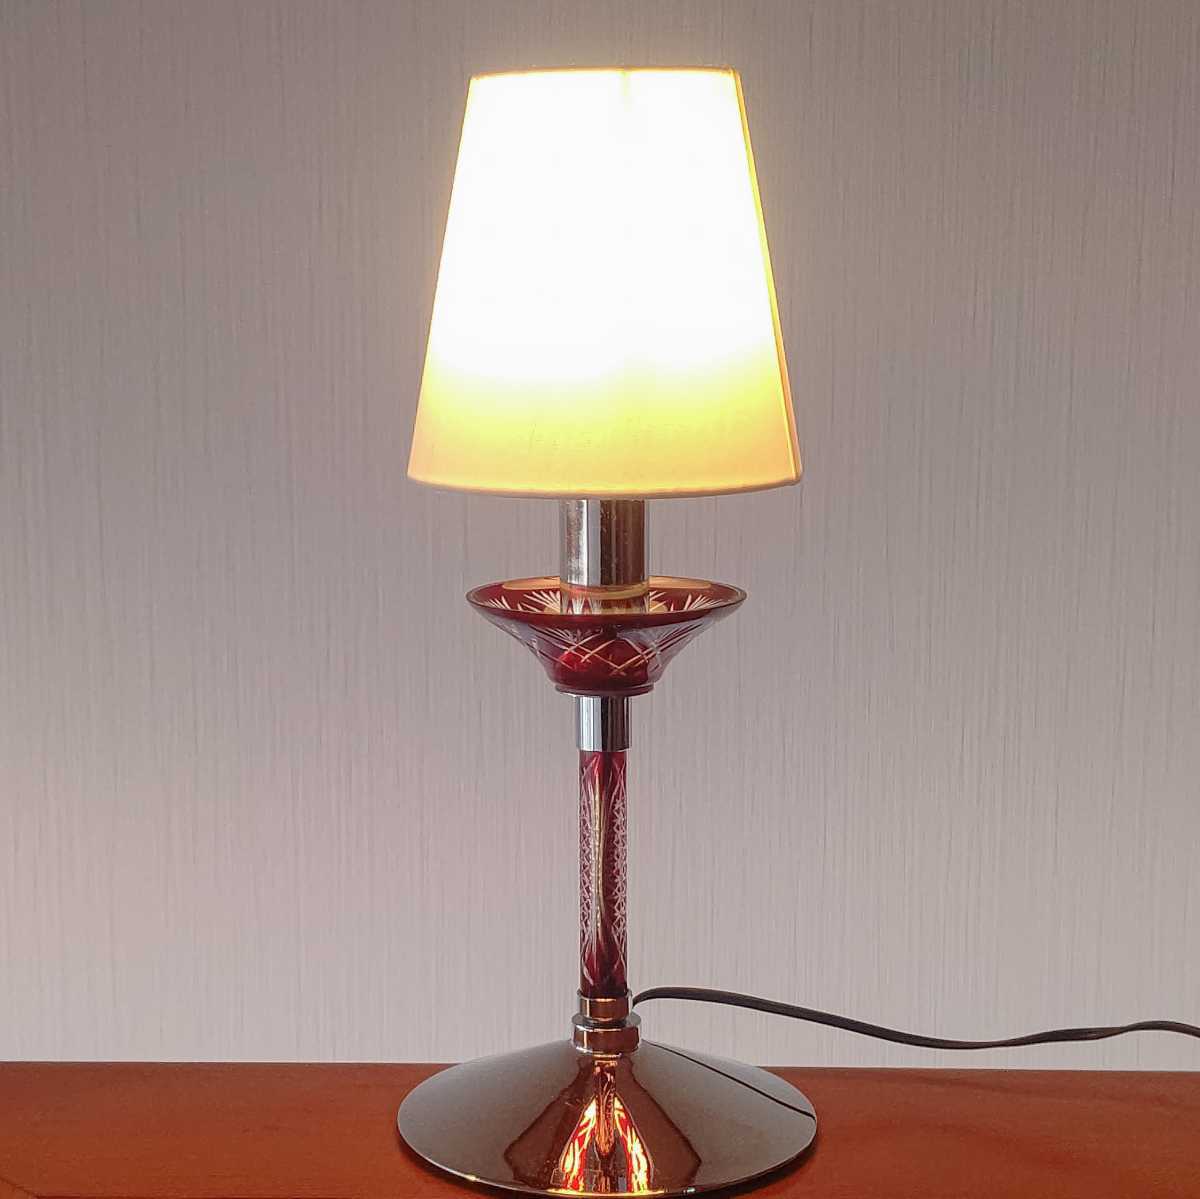 Leviton のランプ(大型)2個セット ライト/照明 フロアスタンド ライト